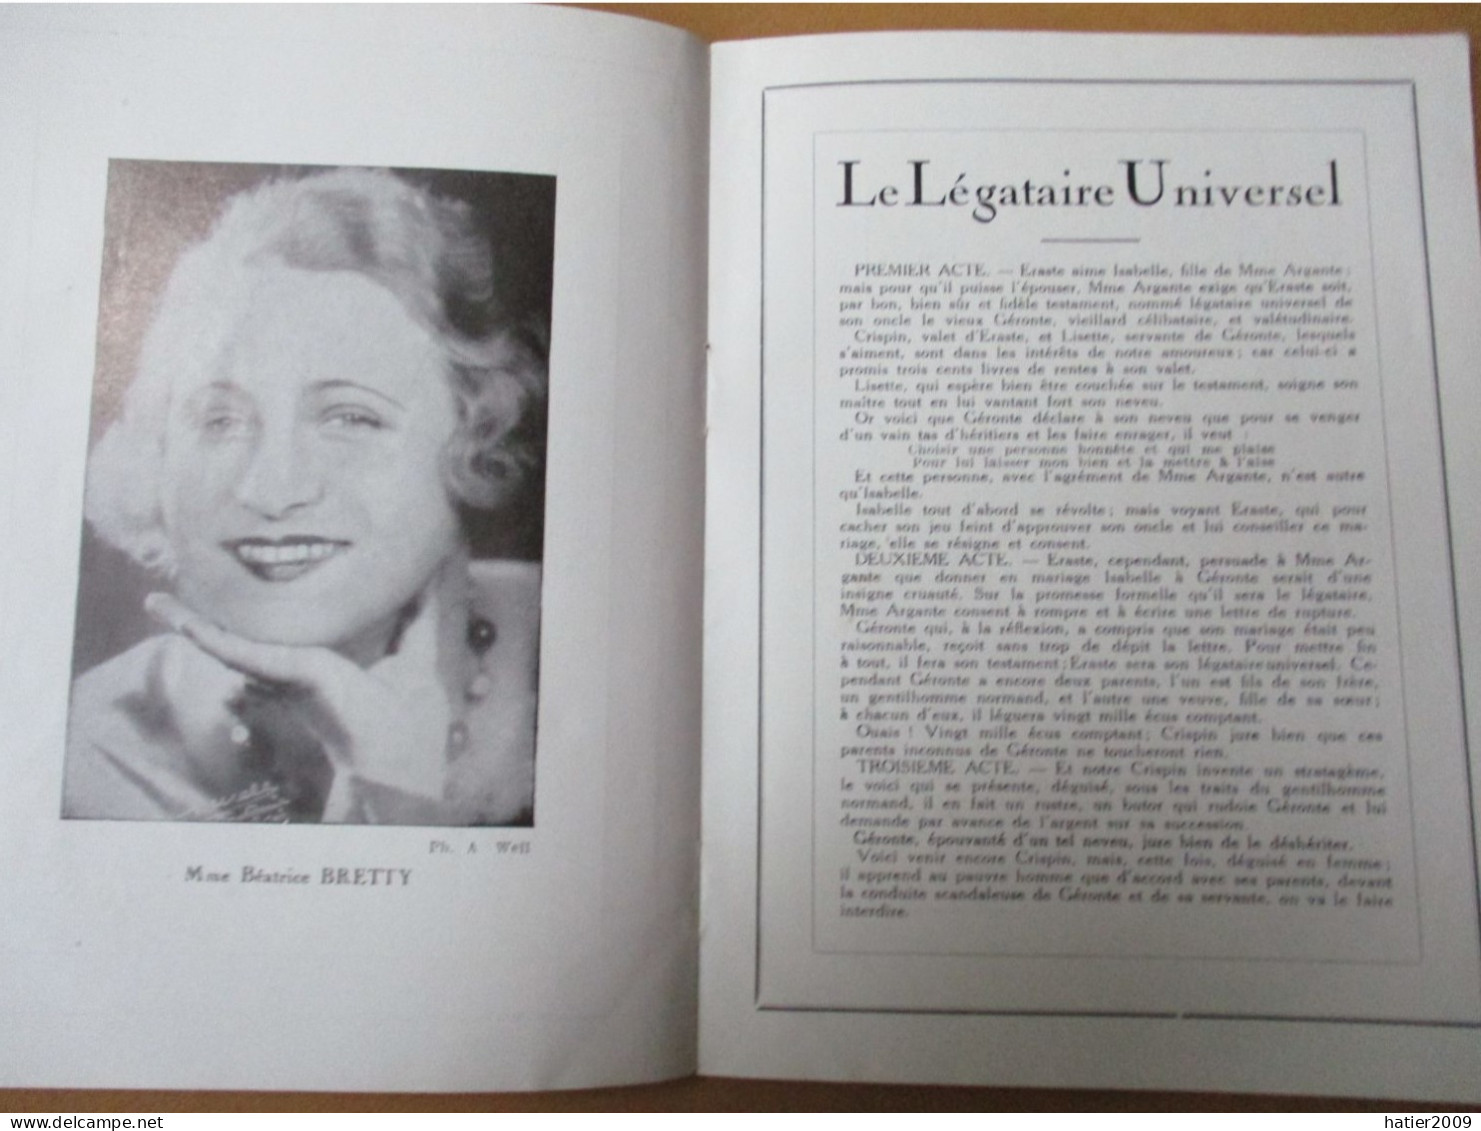 Programme COMEDIE FRANCAISE "A quoi revent les jeunes filles" - 32 pages joliment illustrées -  Avril 1932